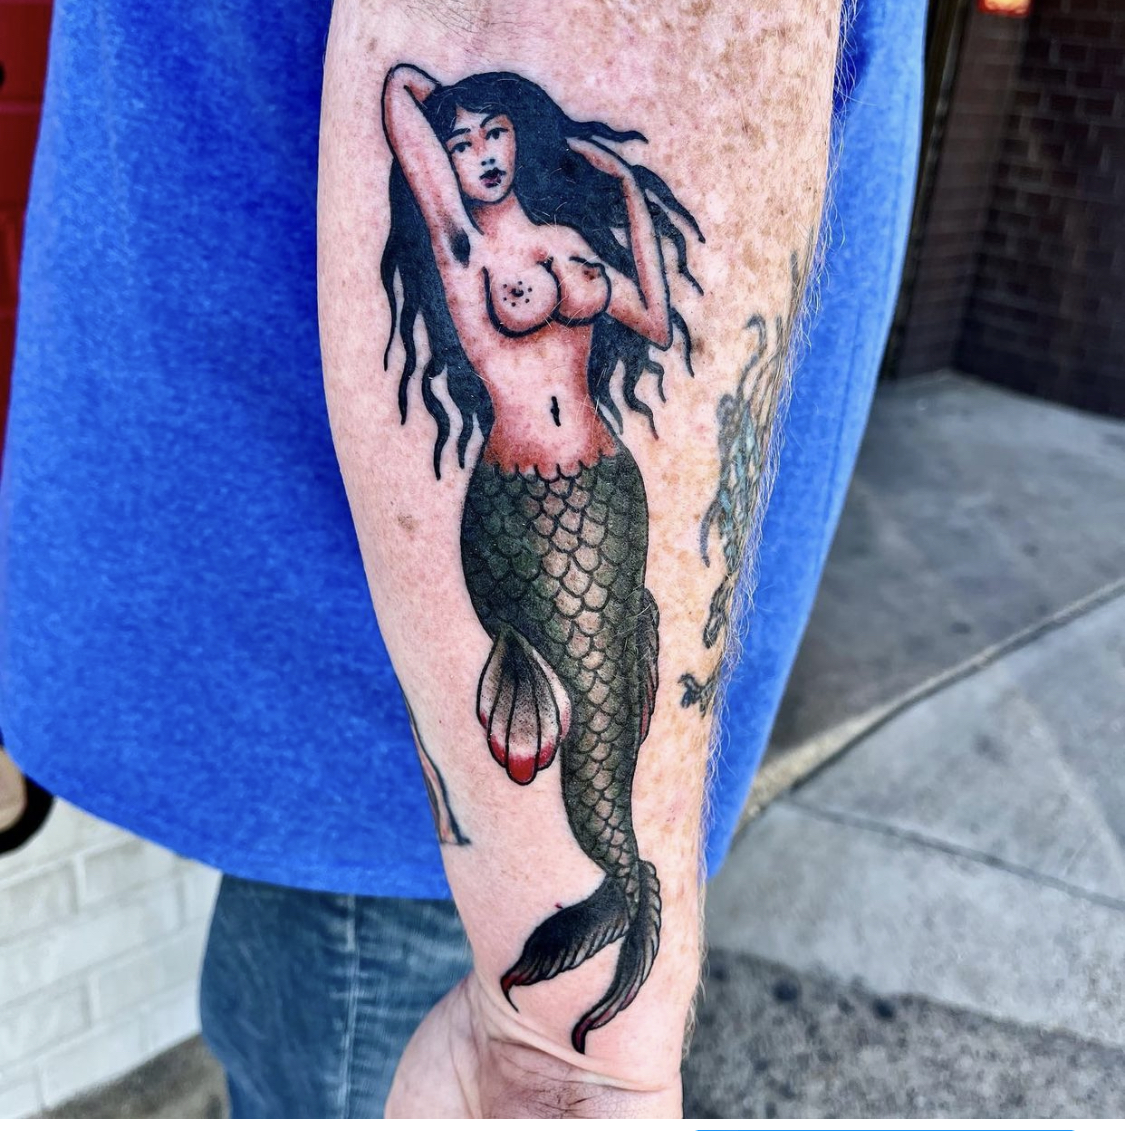 Mermaid tattoo from best tattoo shops in dfw